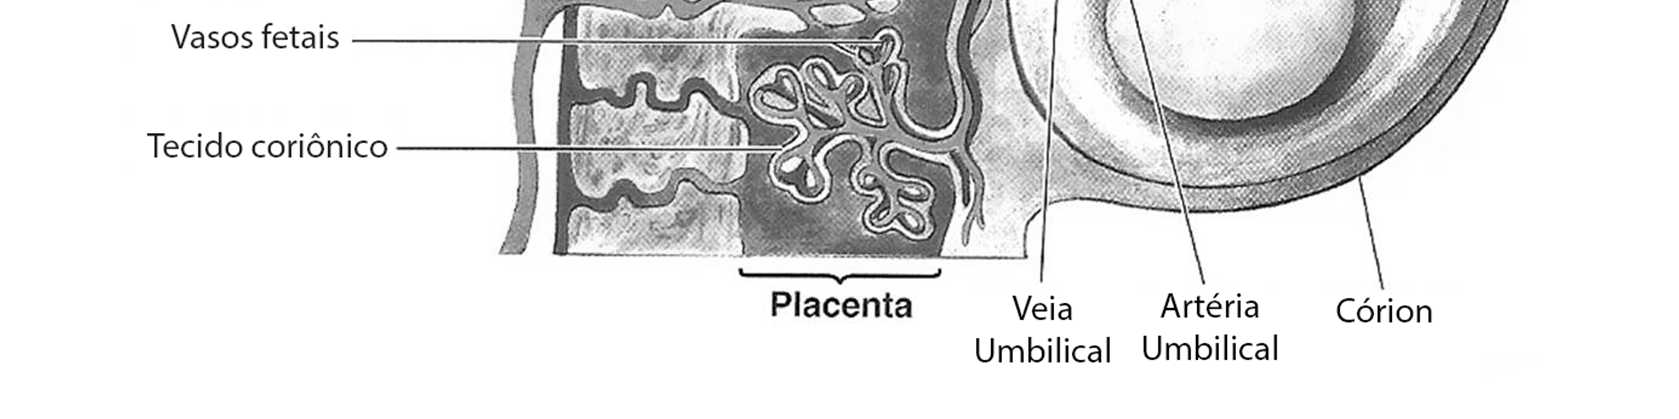 Barreira hemato-placentária: o sangue da mãe nunca se mistura ao sangue fetal porque os vasos sanguíneos de ambos não se encontram.